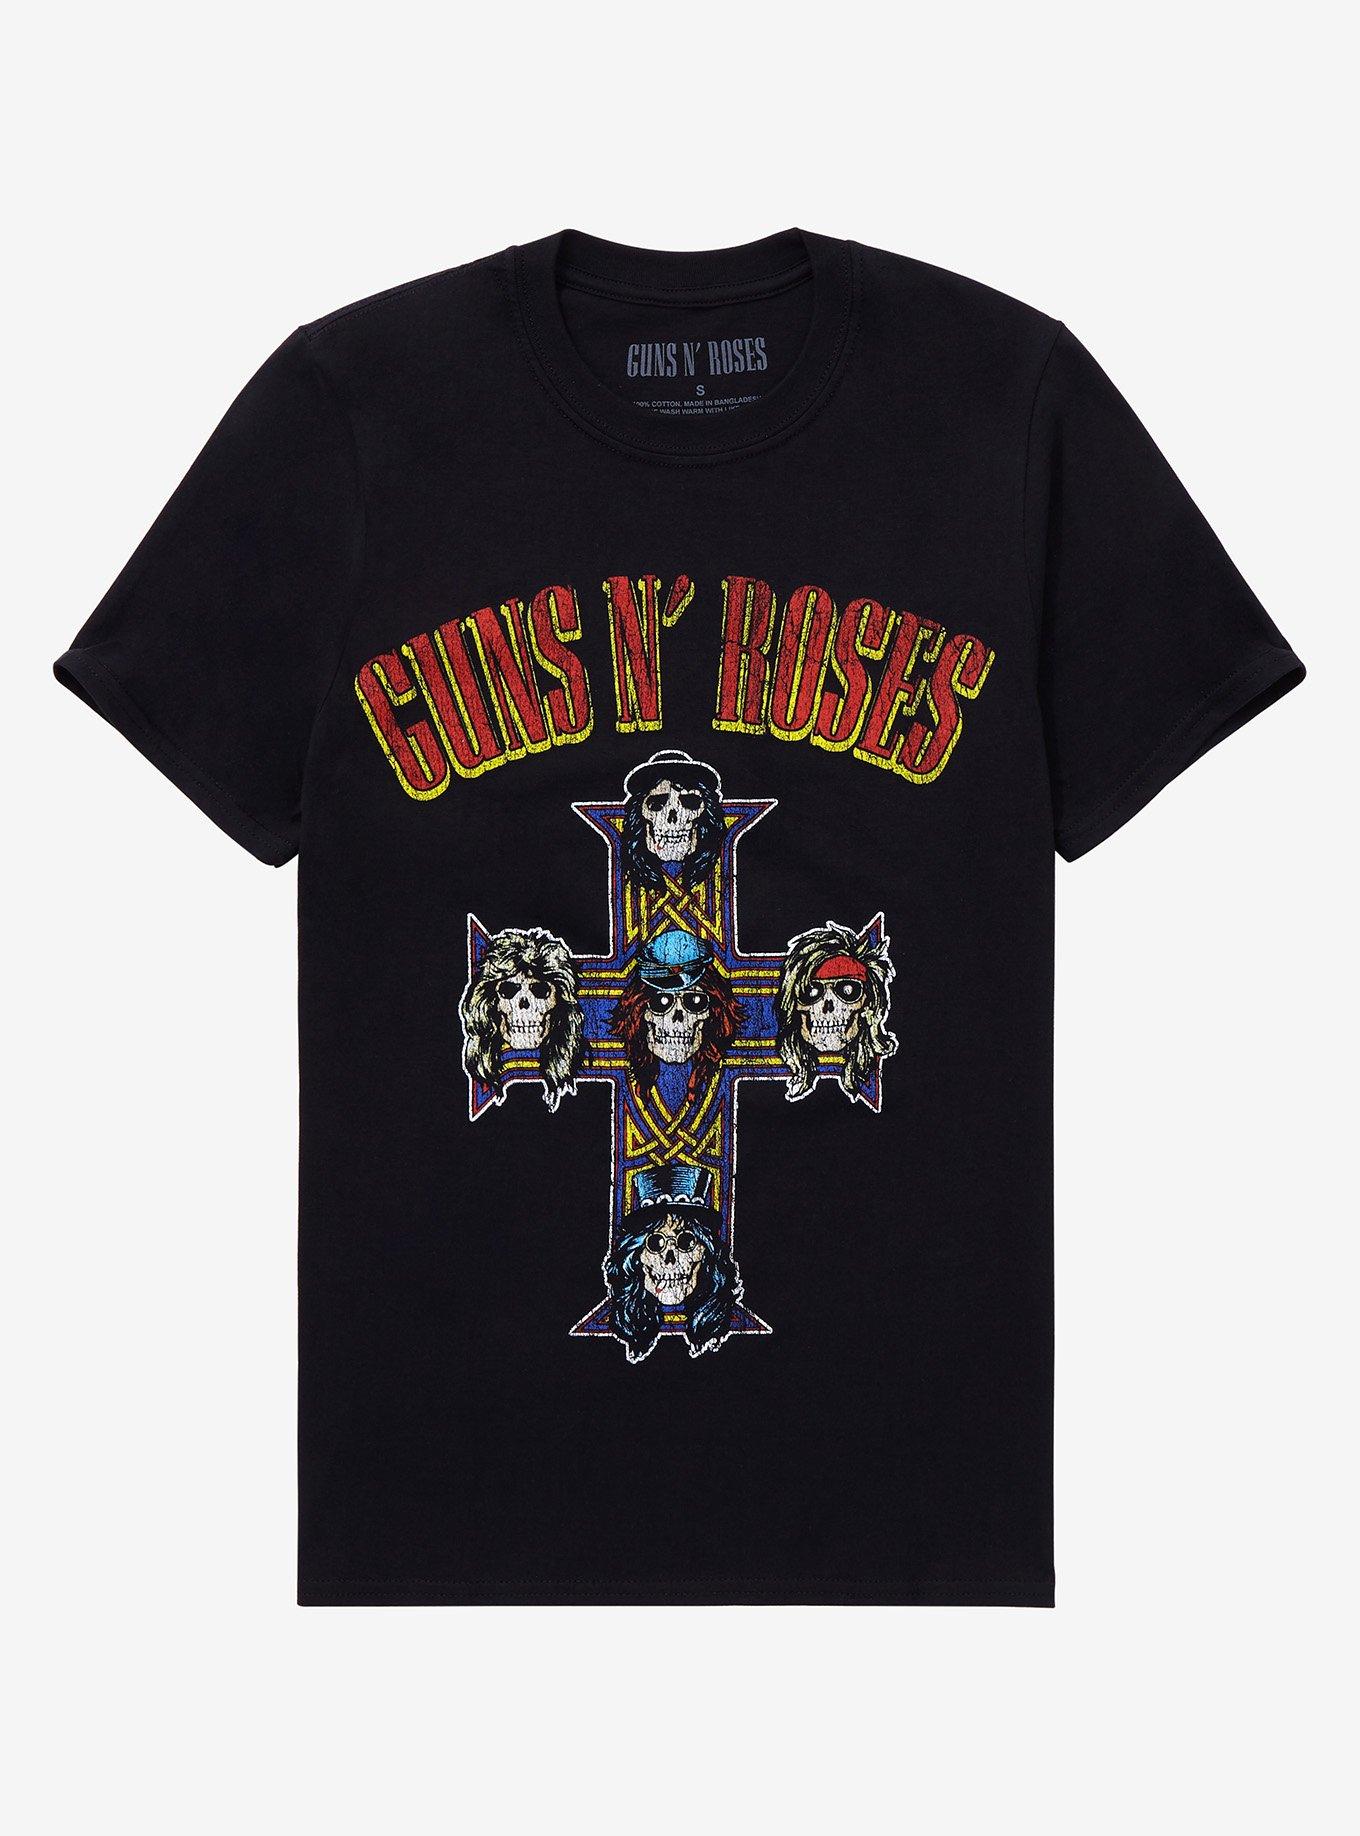 Guns N' Roses Appetite For Destruction T-Shirt | Hot Topic